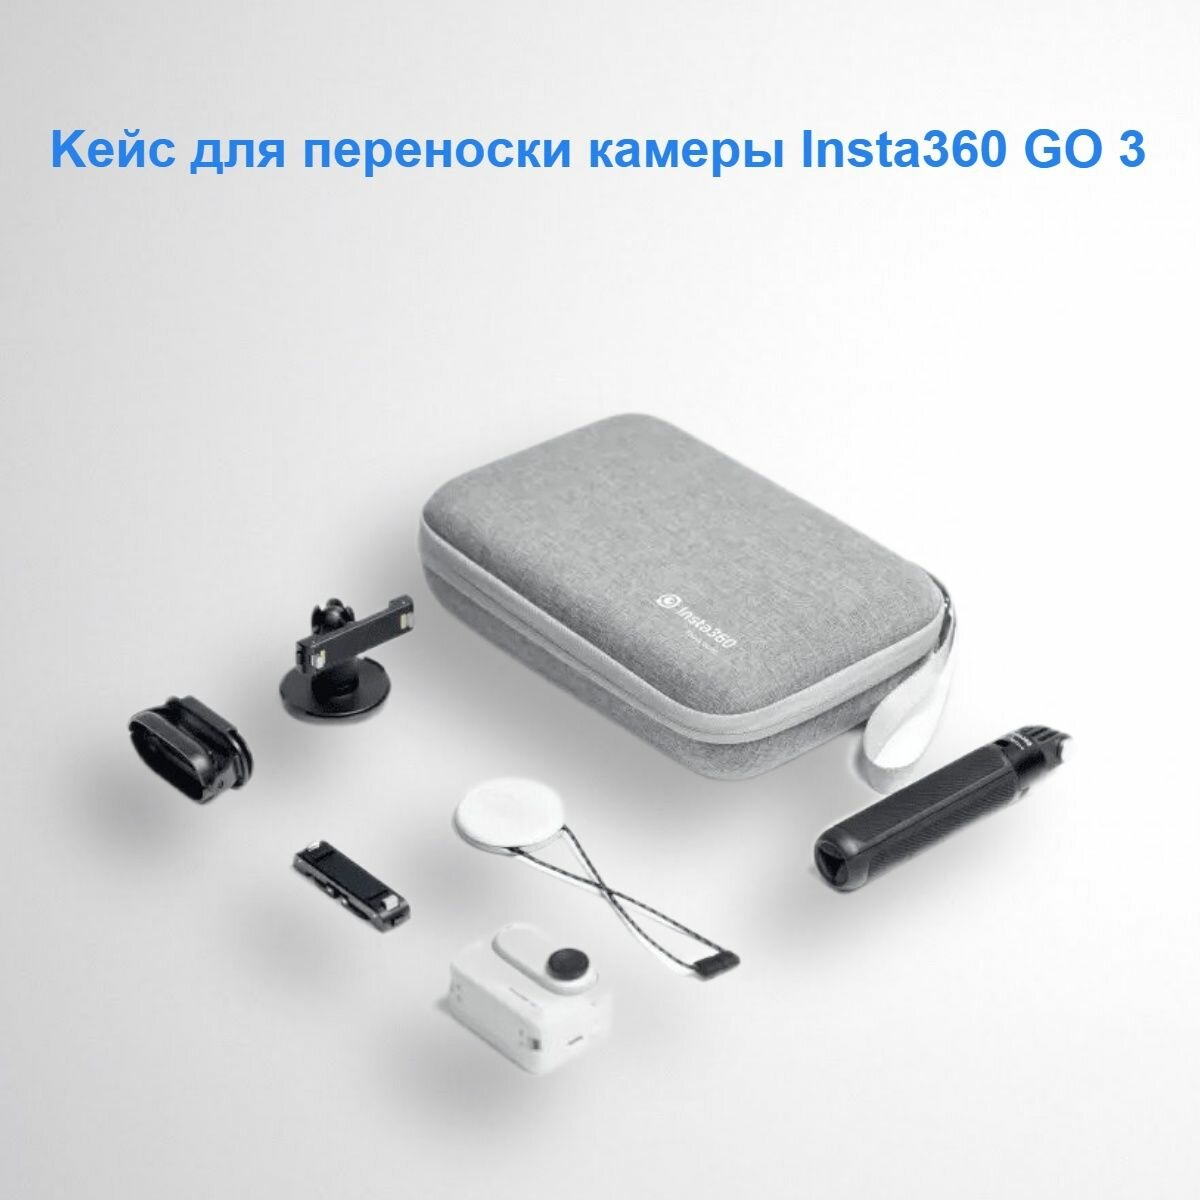 Кейс для переноски экшн-камеры Insta360 GO 3 и аксессуаров серый